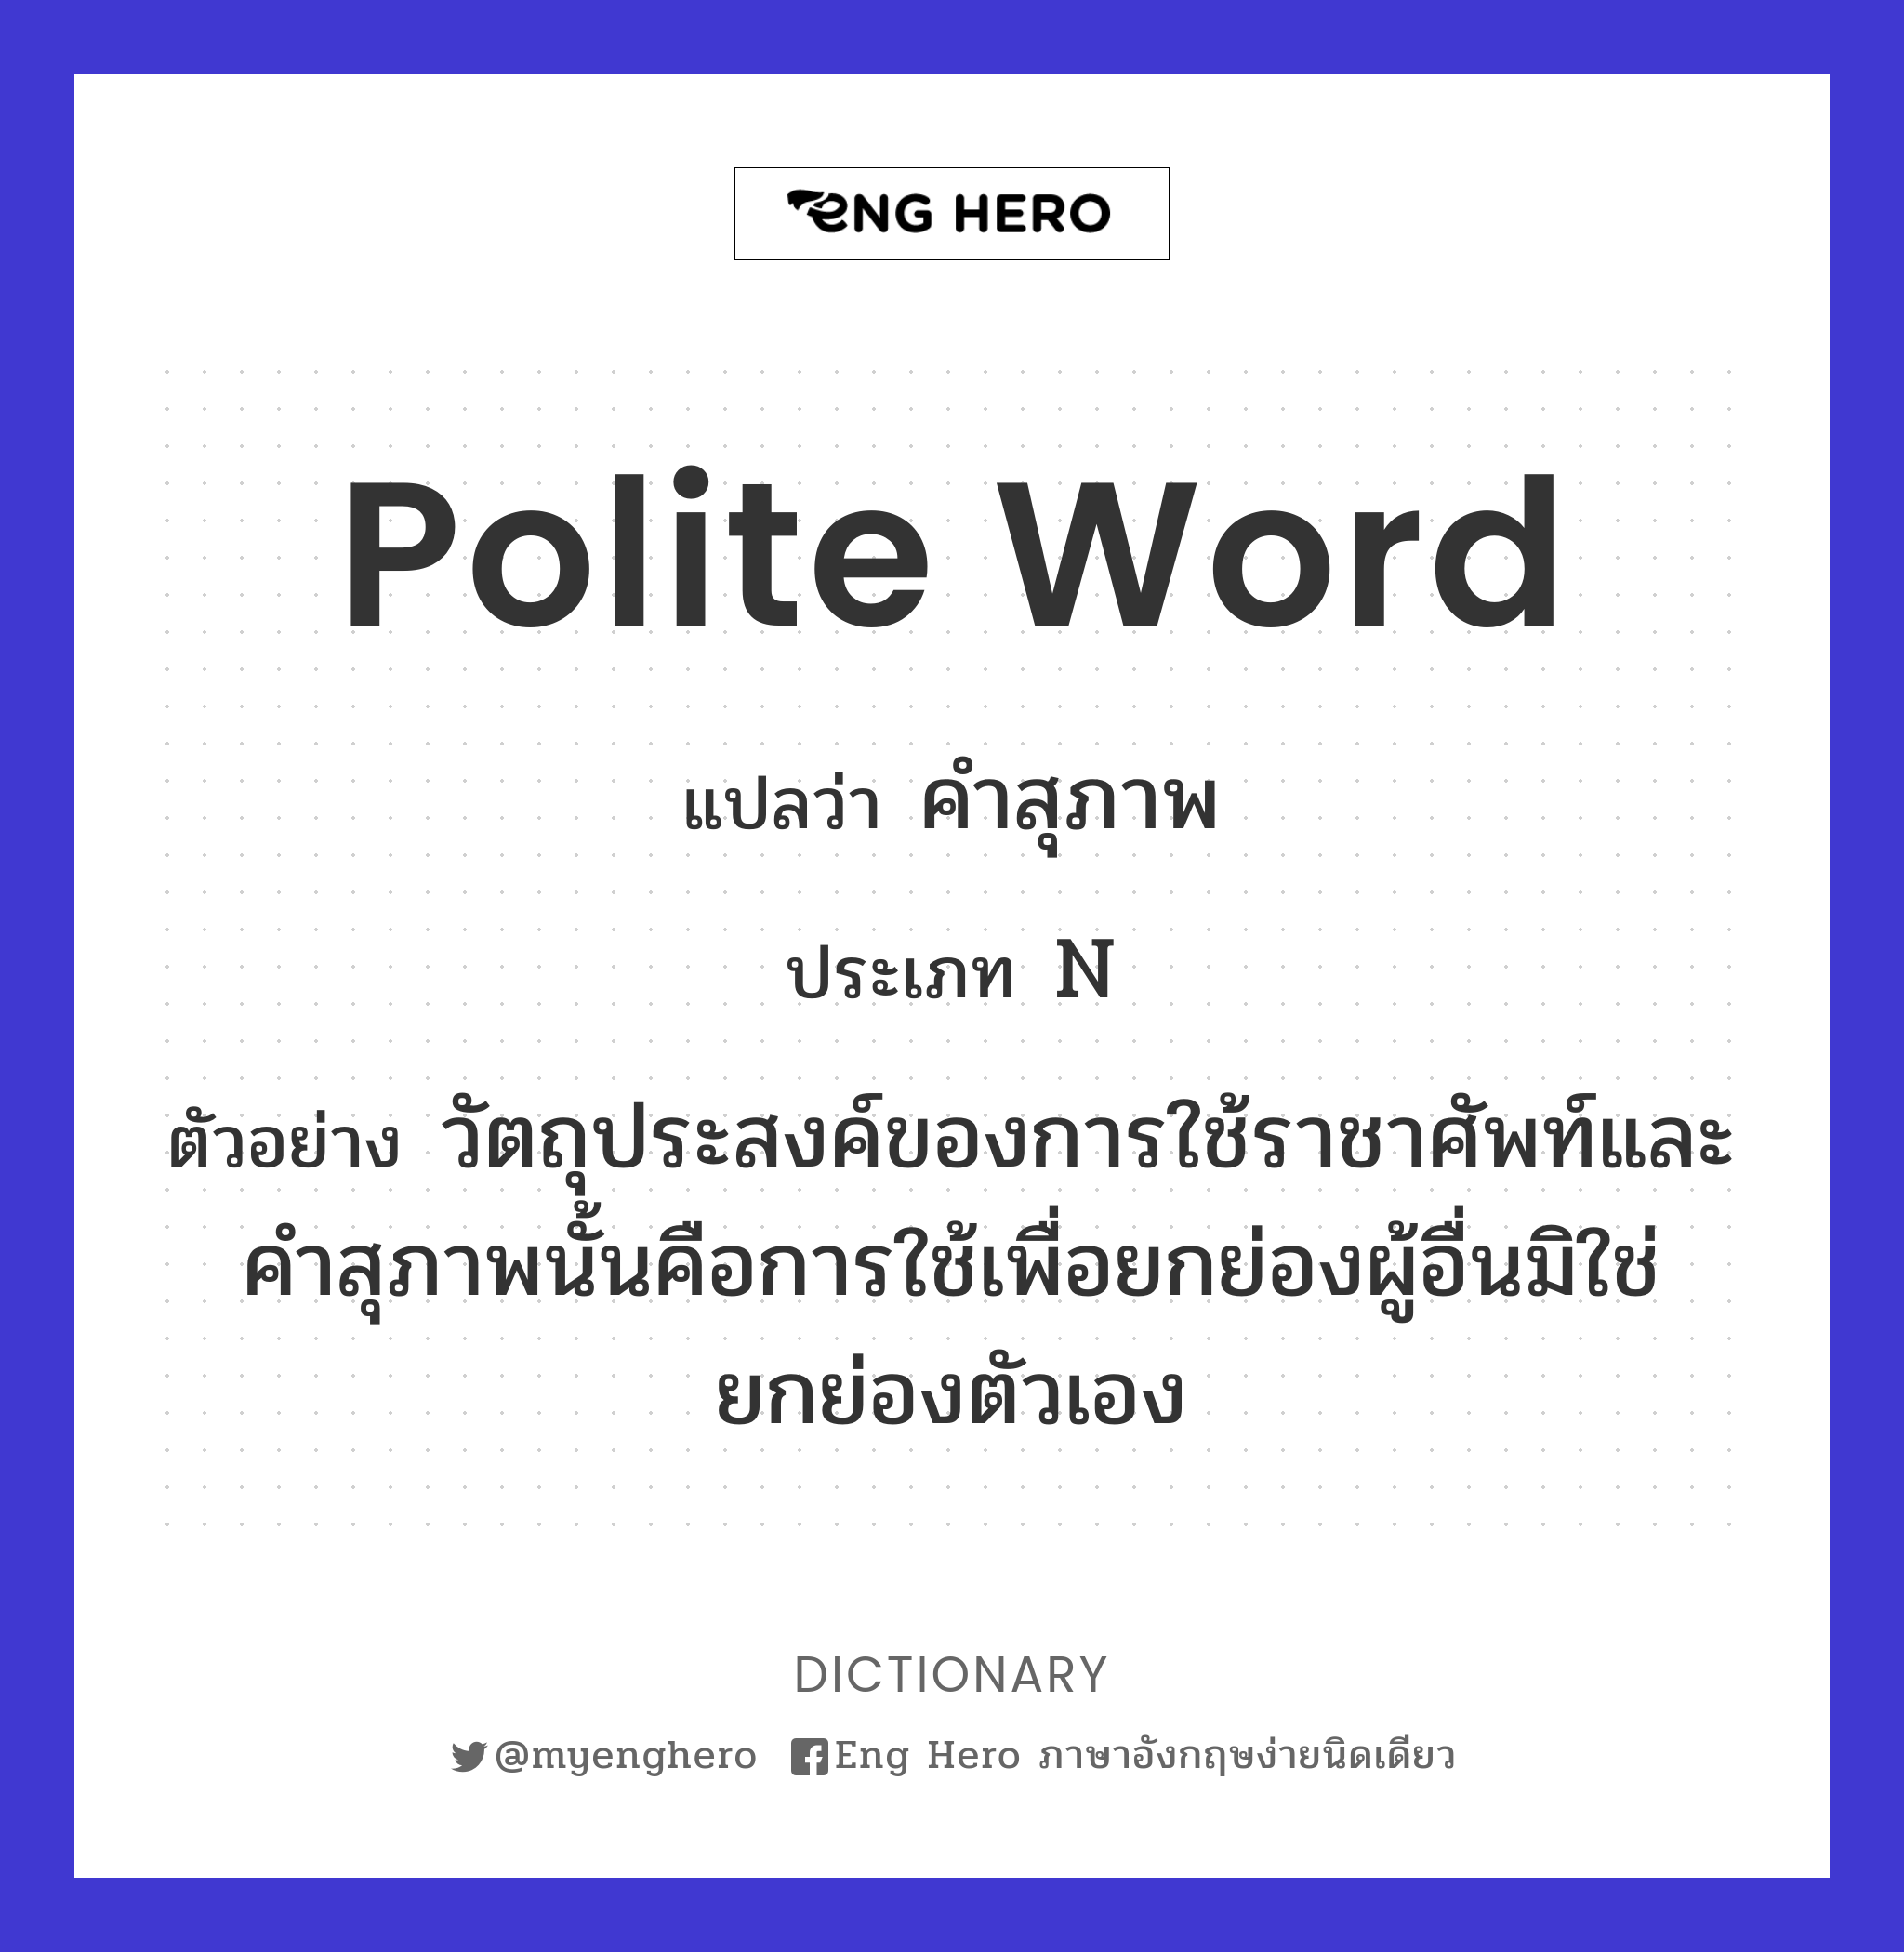 polite word